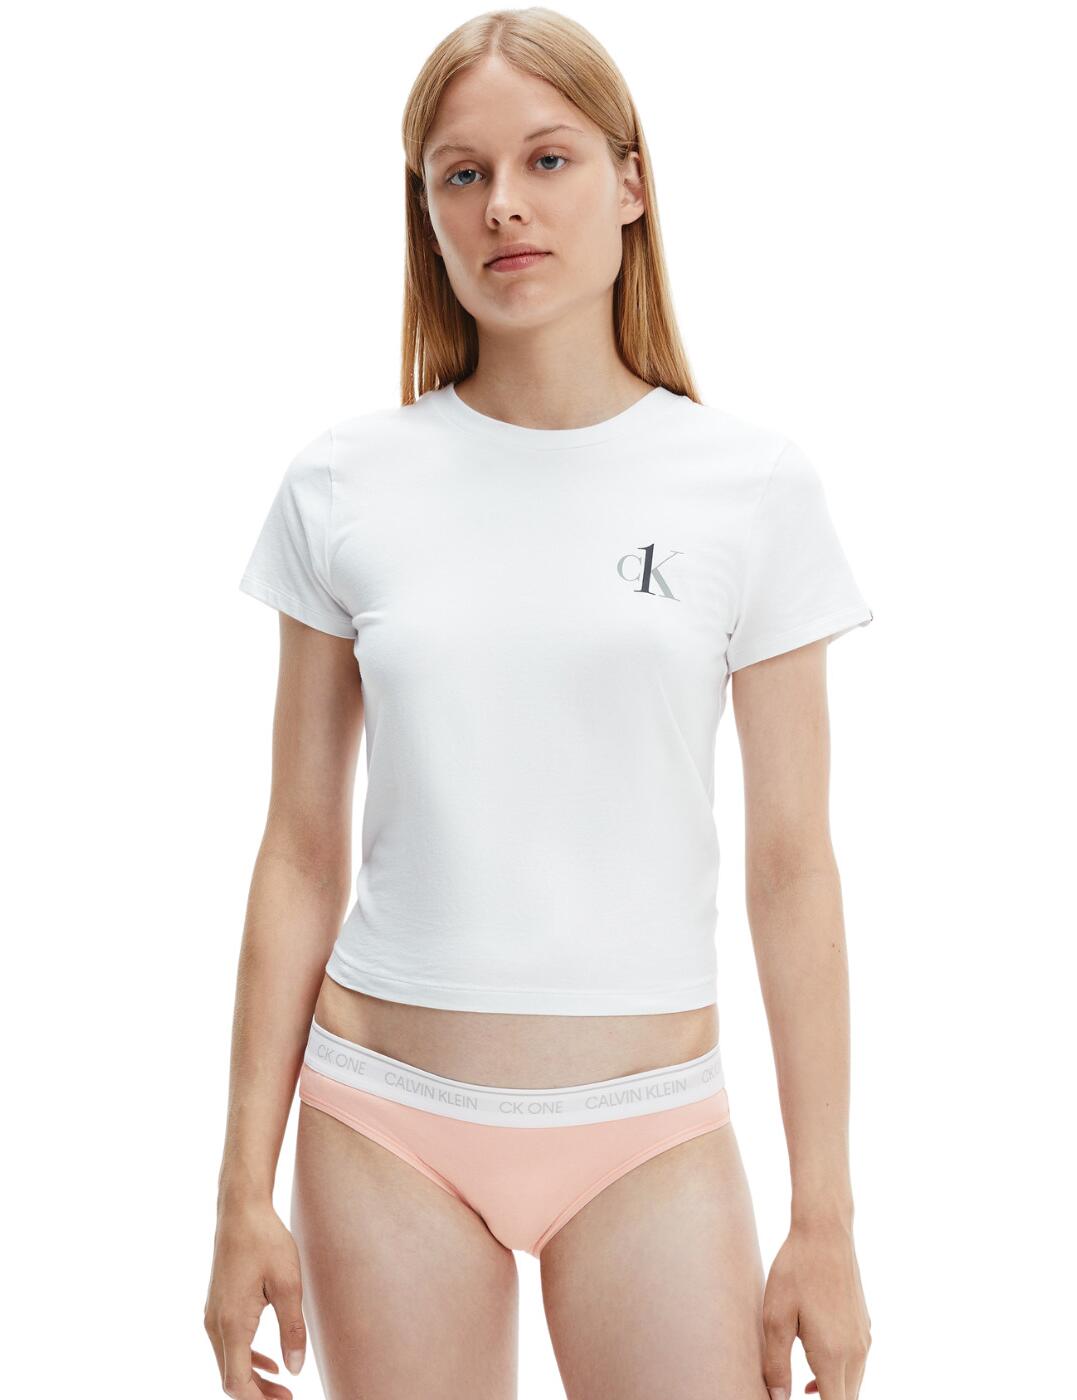 Calvin Klein Underwear Ck One Cotton-blend Jersey Bralette - White